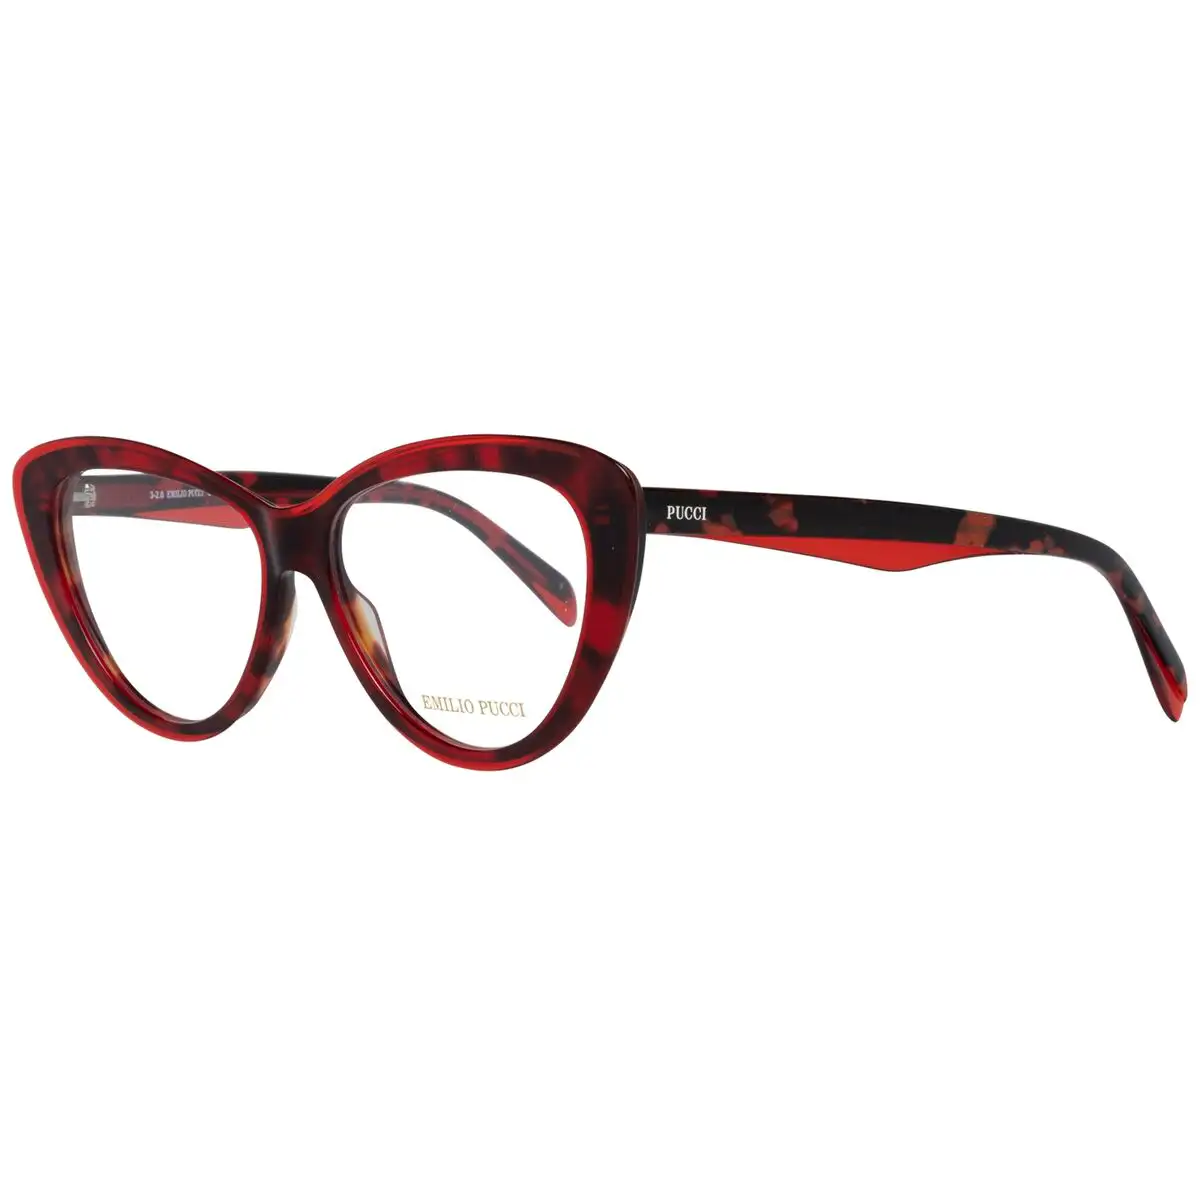 Monture de lunettes femme emilio pucci ep5096 55068_3566. DIAYTAR SENEGAL - L'Art de Choisir, l'Art de S'émerveiller. Explorez notre gamme de produits et laissez-vous émerveiller par des créations authentiques et des designs modernes.